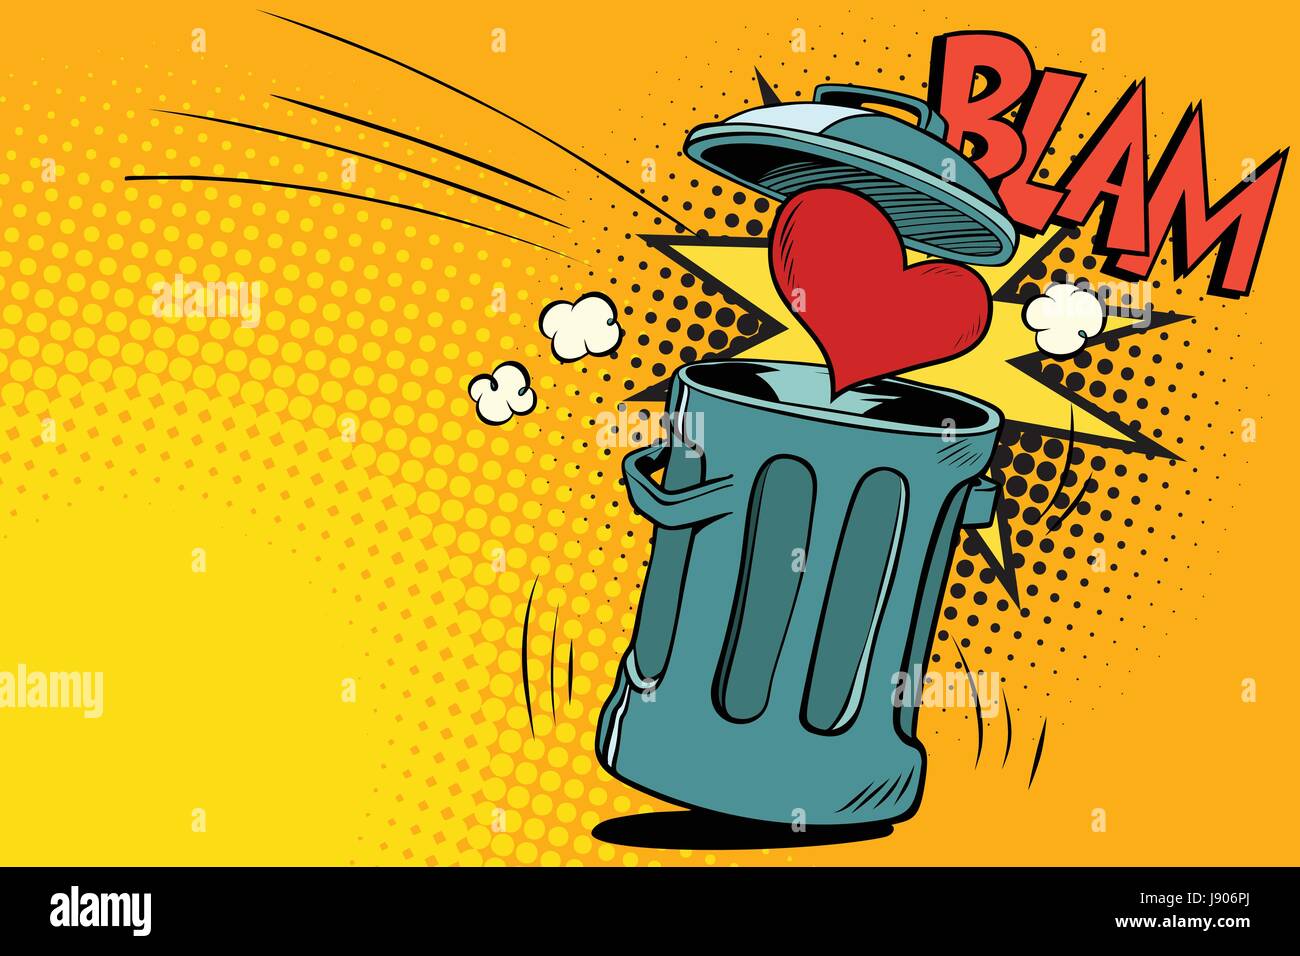 Fin de l'amour, cœur jeté à la poubelle. Cartoon illustration bande dessinée pop art retro style vector Illustration de Vecteur